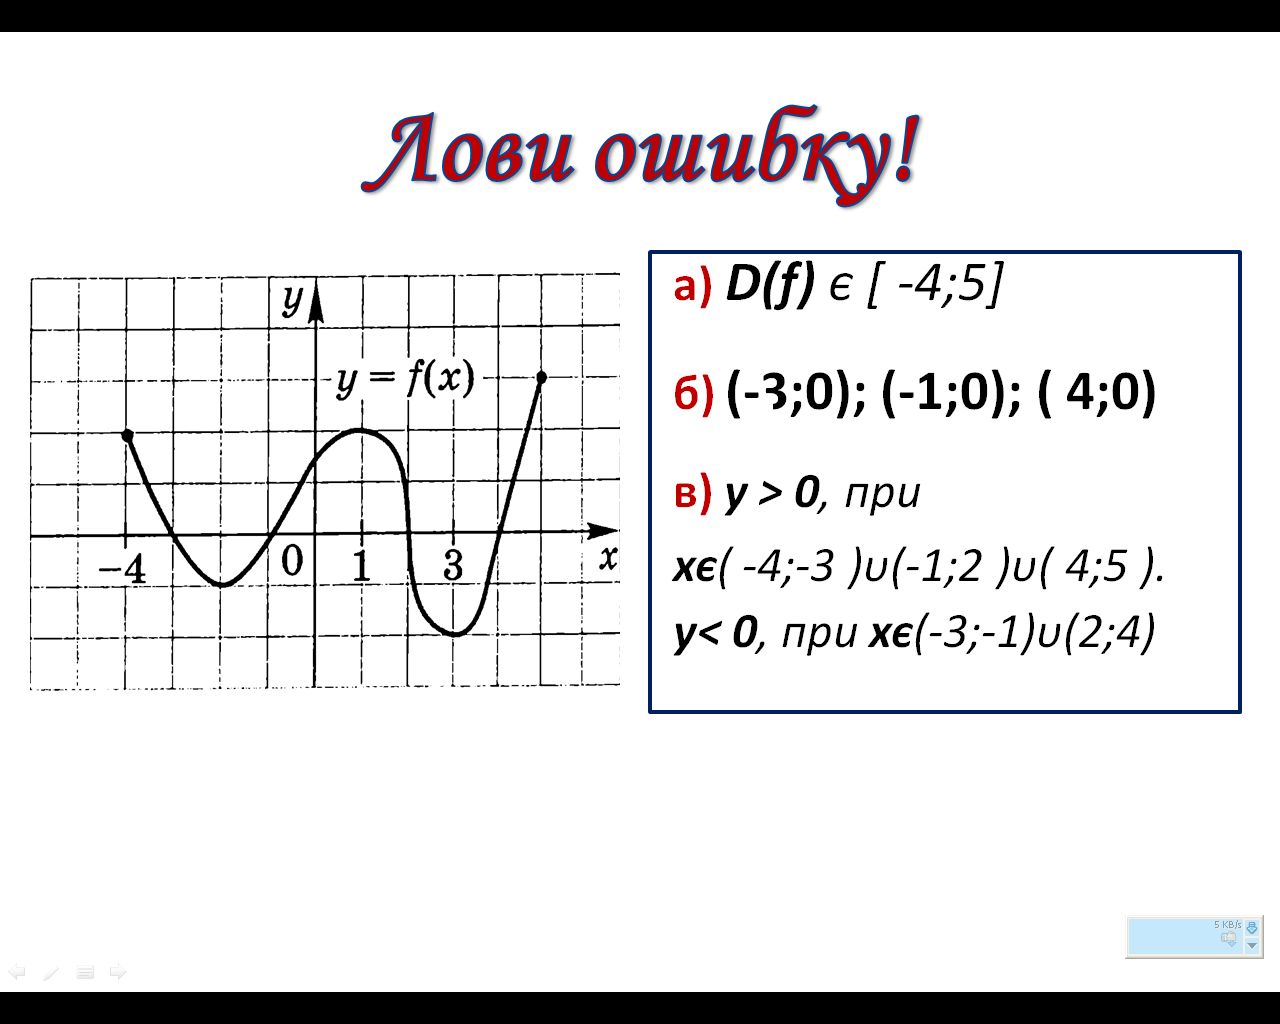 Конспект урока по математике на тему: «Исследование функции элементарными методами, построение графика функции»